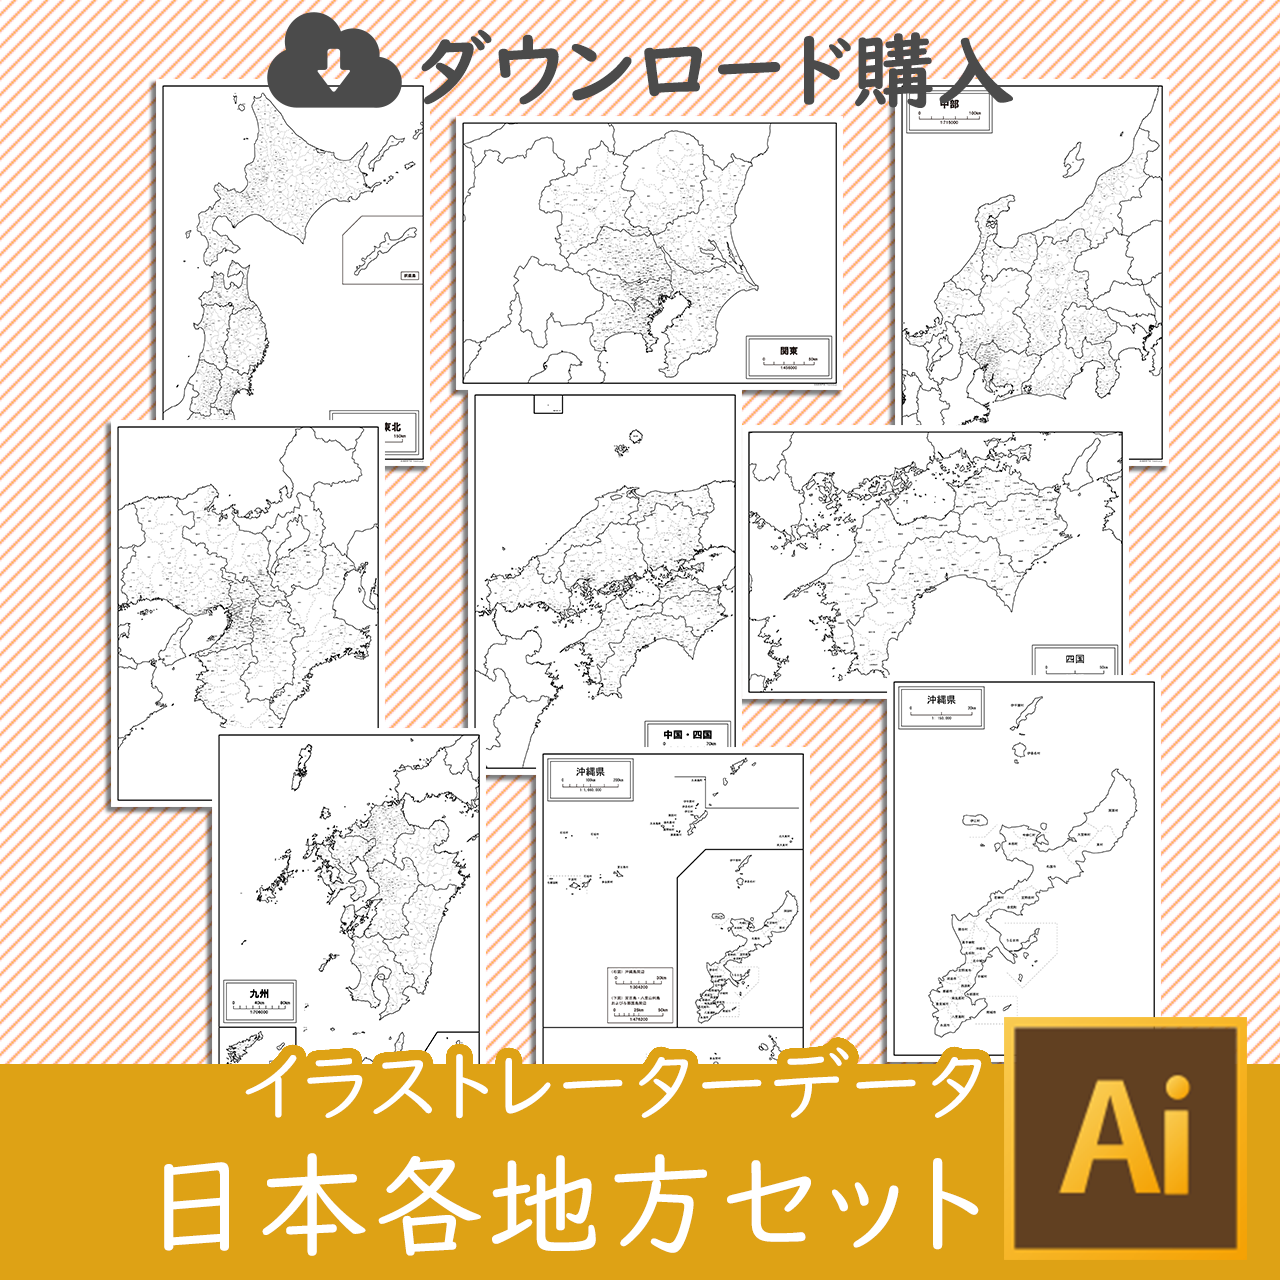 日本地図-簡易版のイラストレータデータのサムネイル